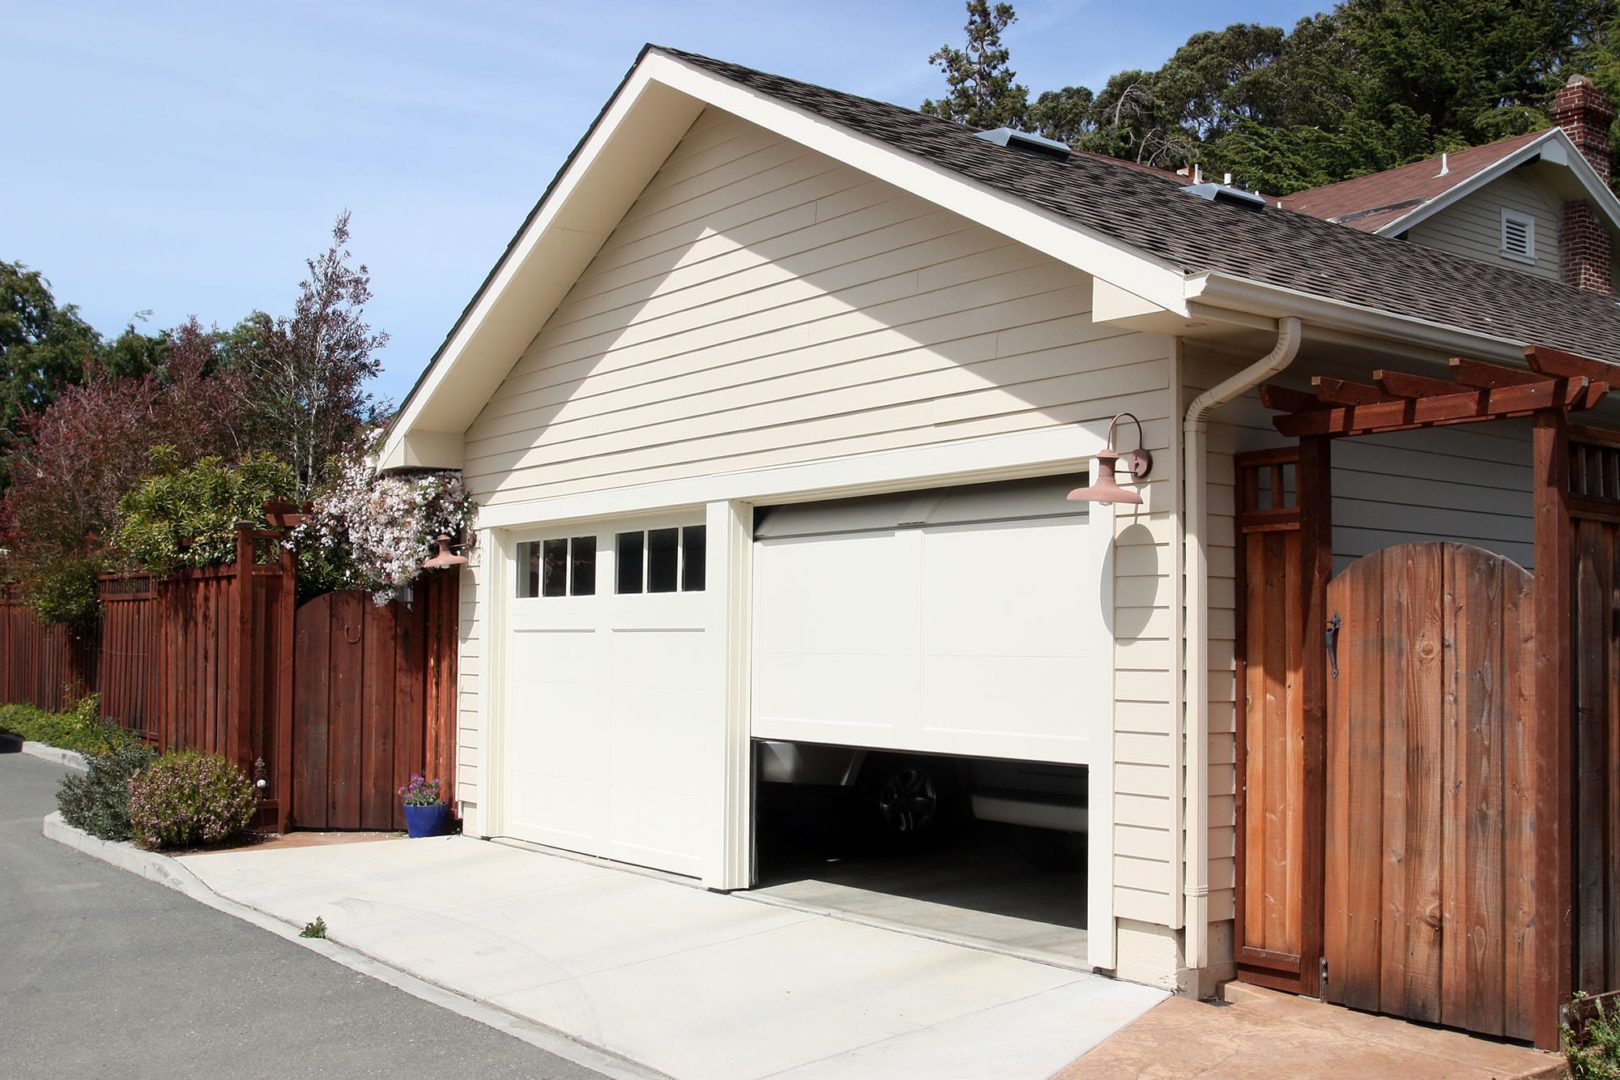 An open garage door. What happens when your garage door won't close.